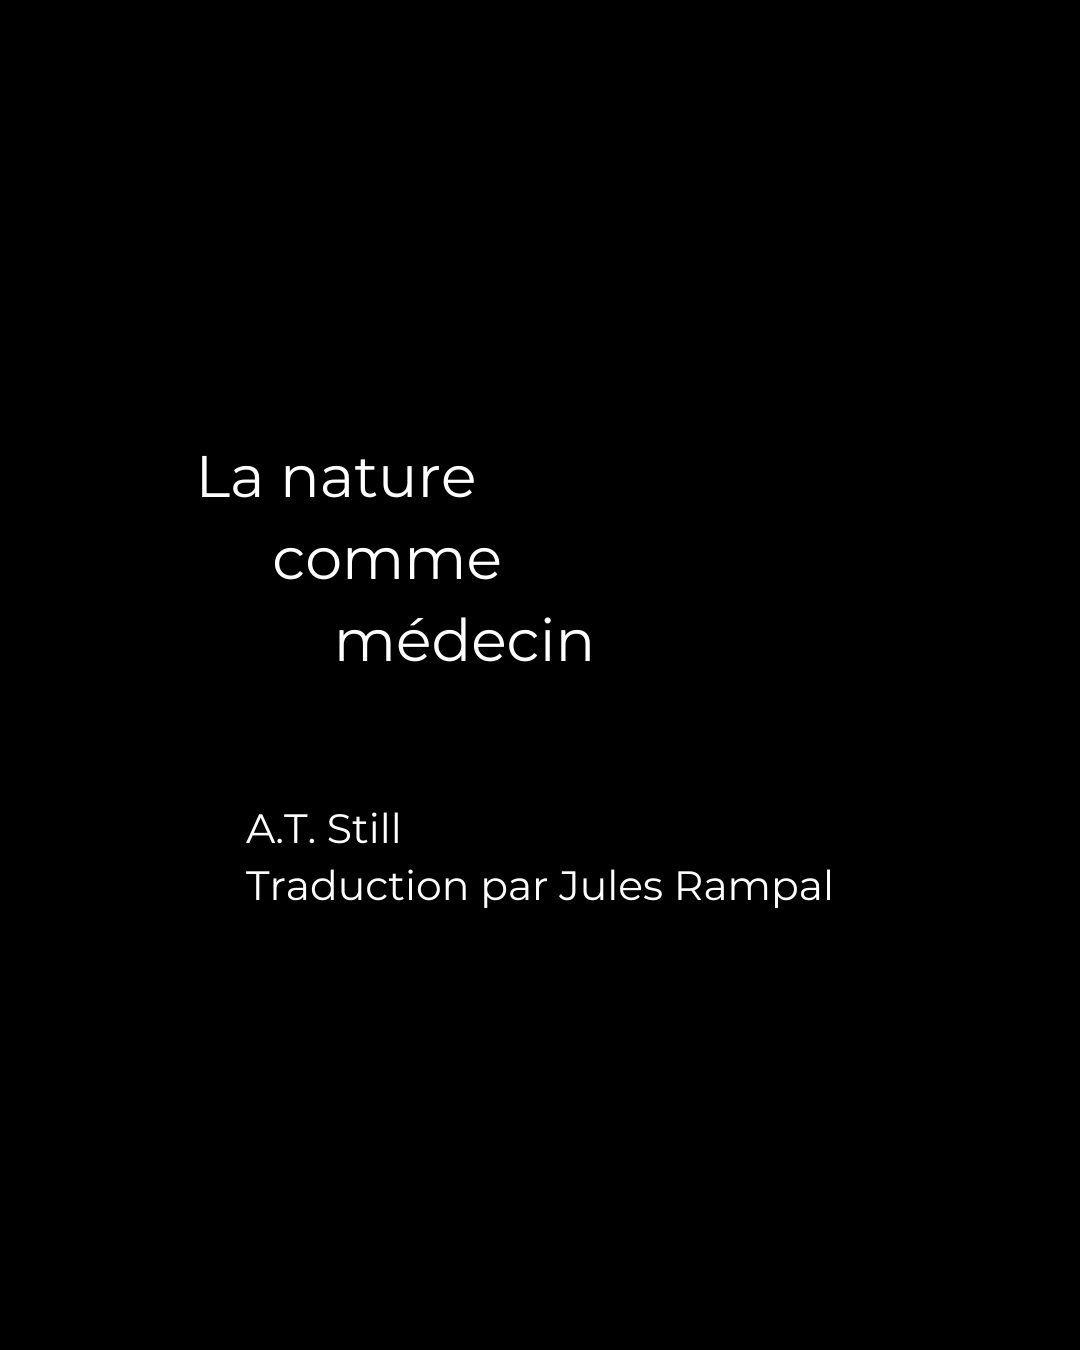 La nature comme médecin, Journal of Osteopathy Décembre 1897 – Traduction